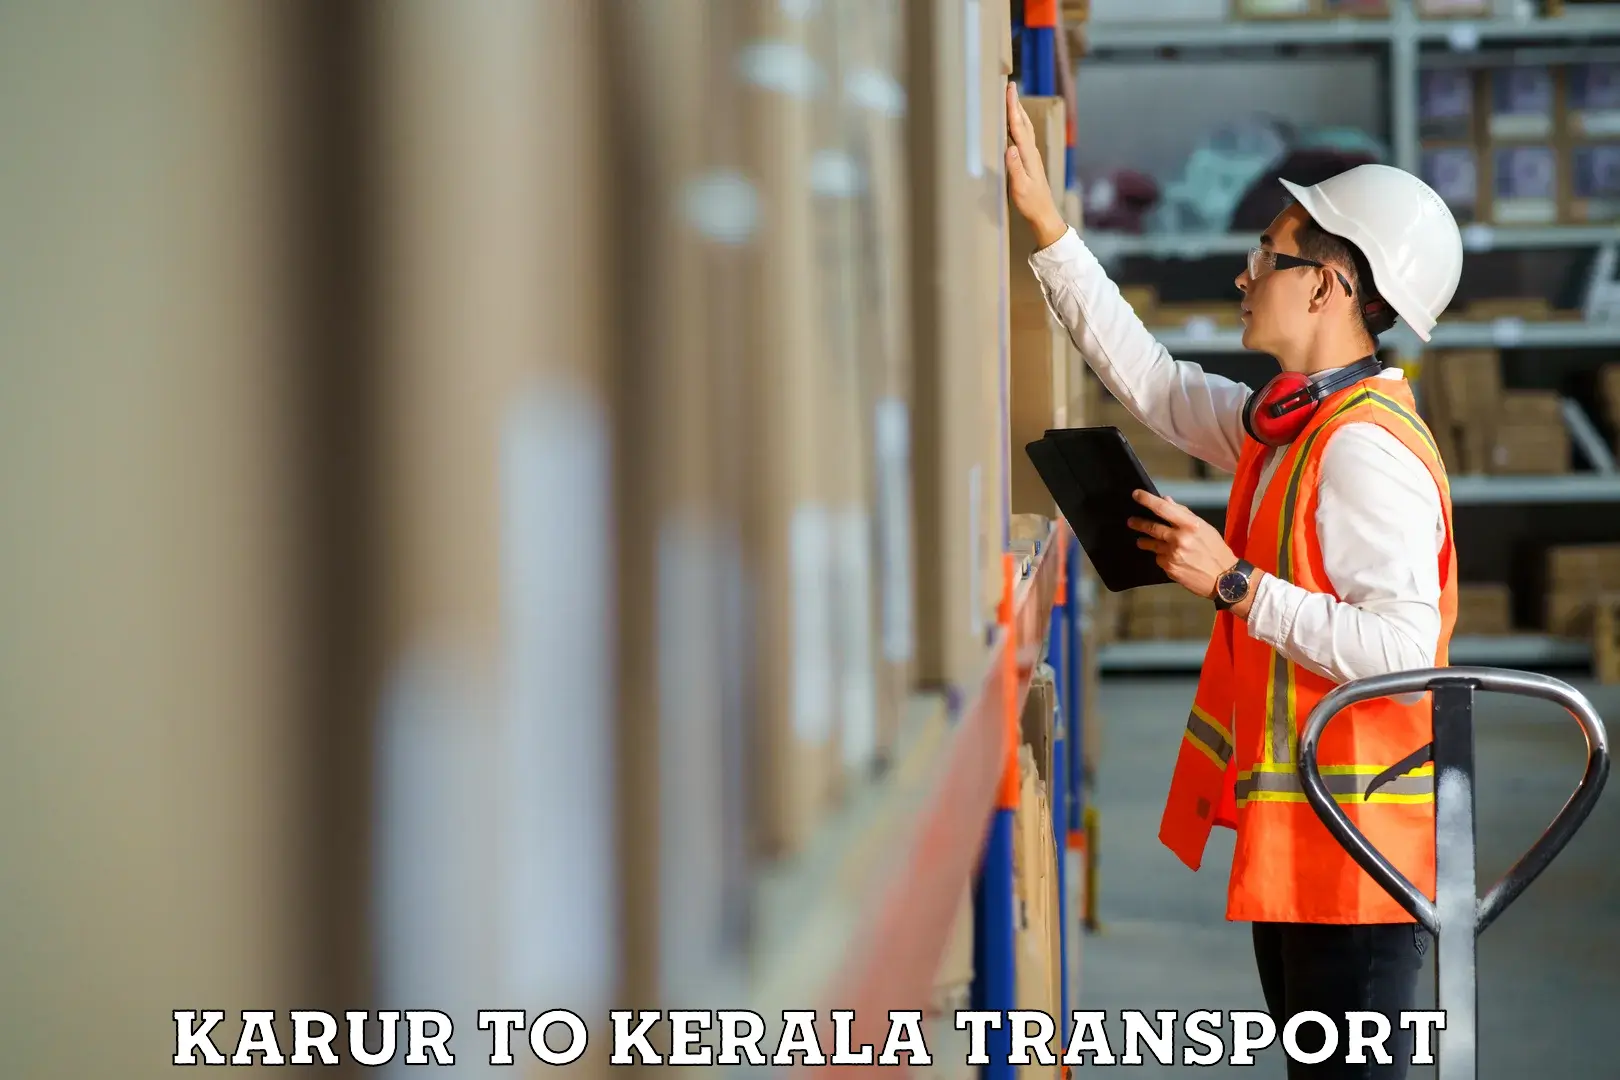 Nearest transport service Karur to Nallepilly